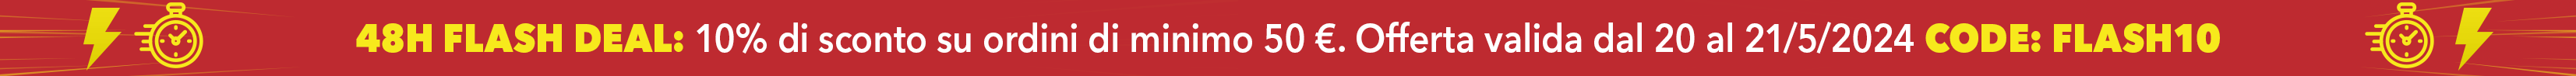 48H FLASH DEAL: 10% di sconto su ordini di minimo 50 €. Offerta valida dal 20 al 21/5/2024 CODE: FLASH10